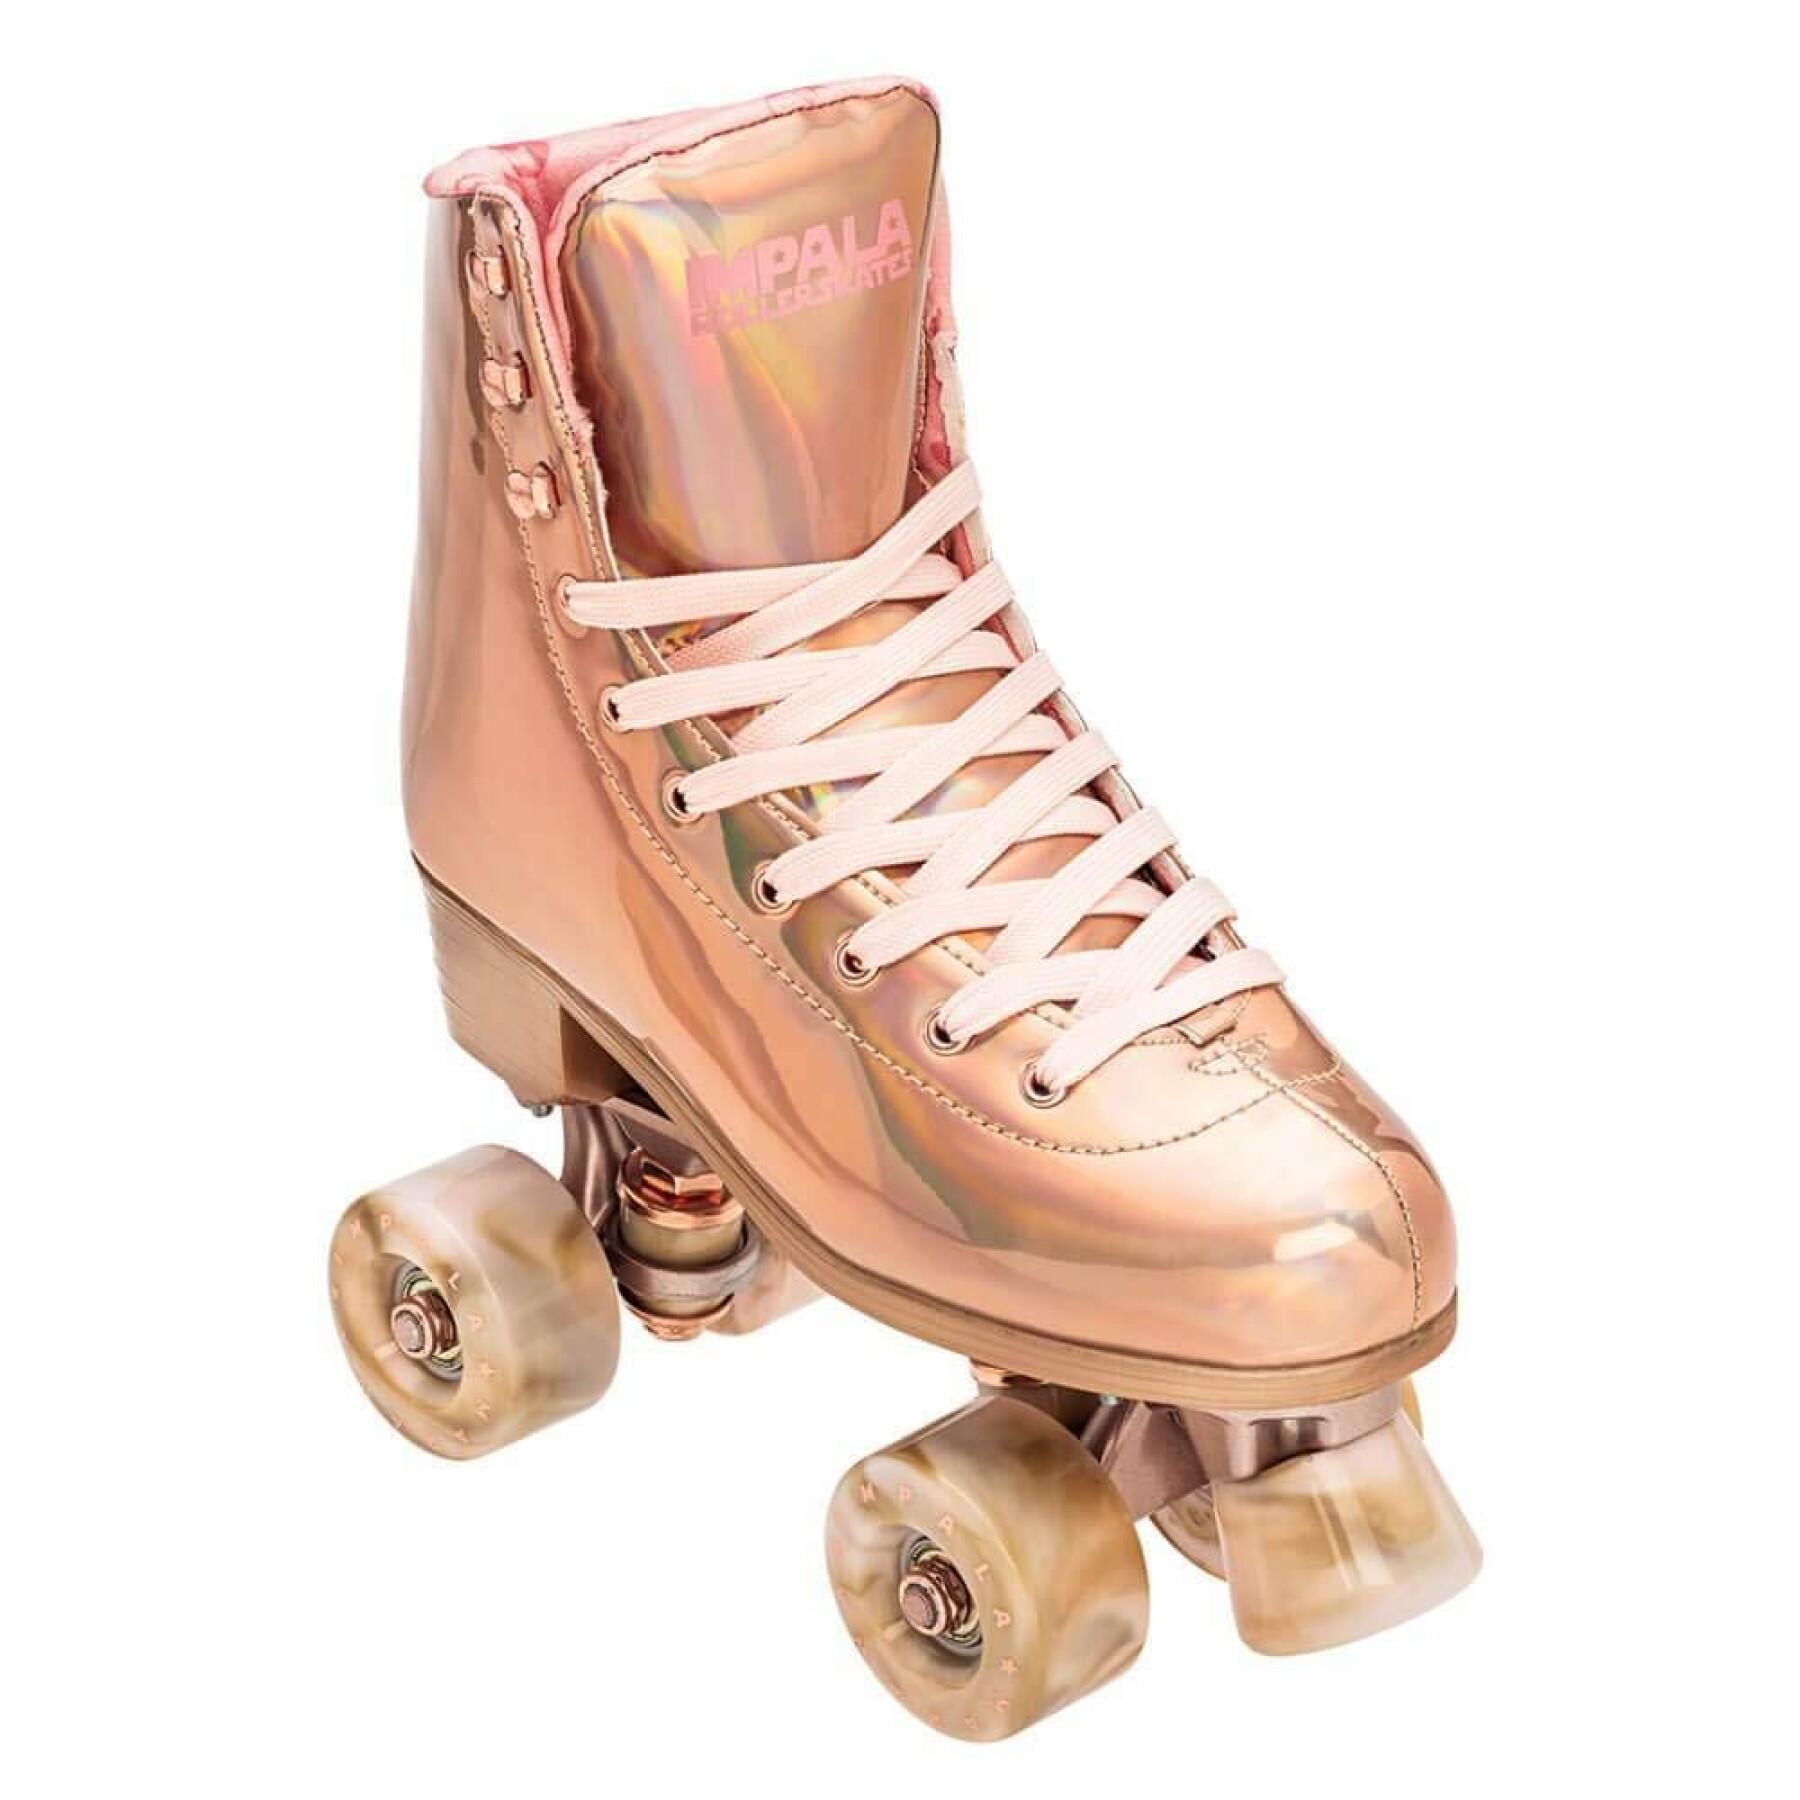 Sapatos de Mulher Impala Quad Skate